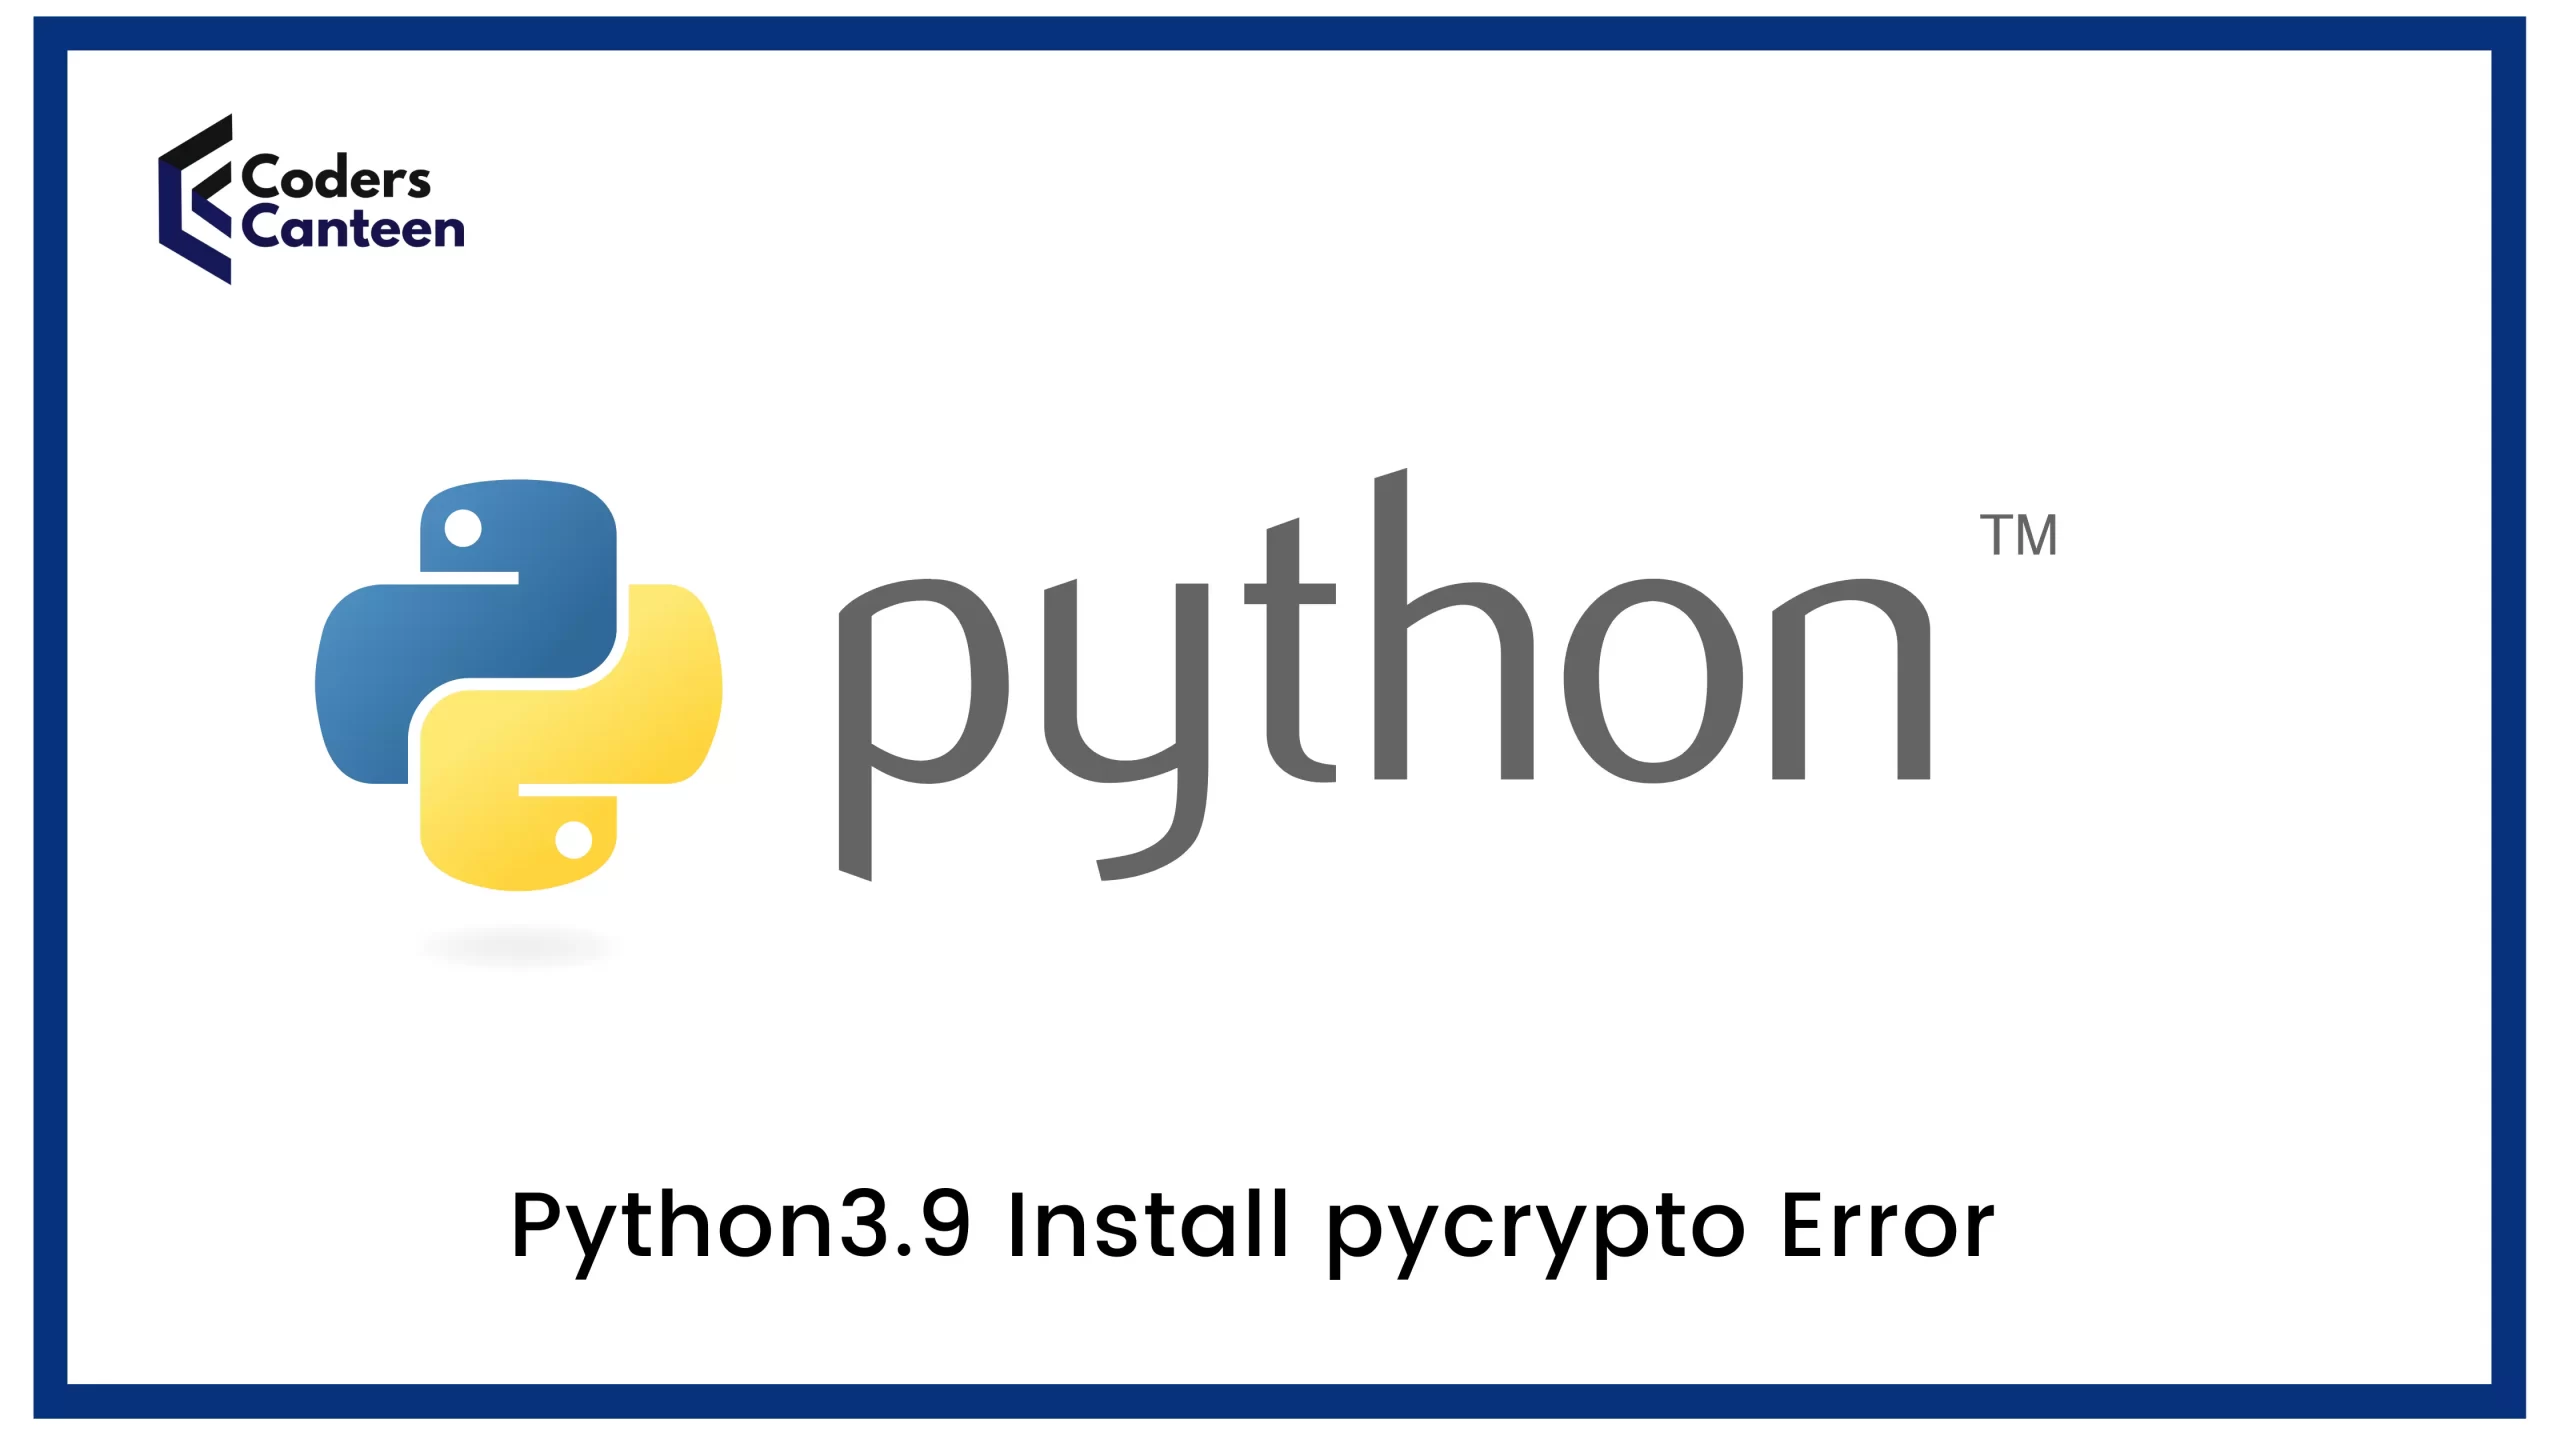 pycrypto Error: [Solved] Python3.9 Installation Immediately